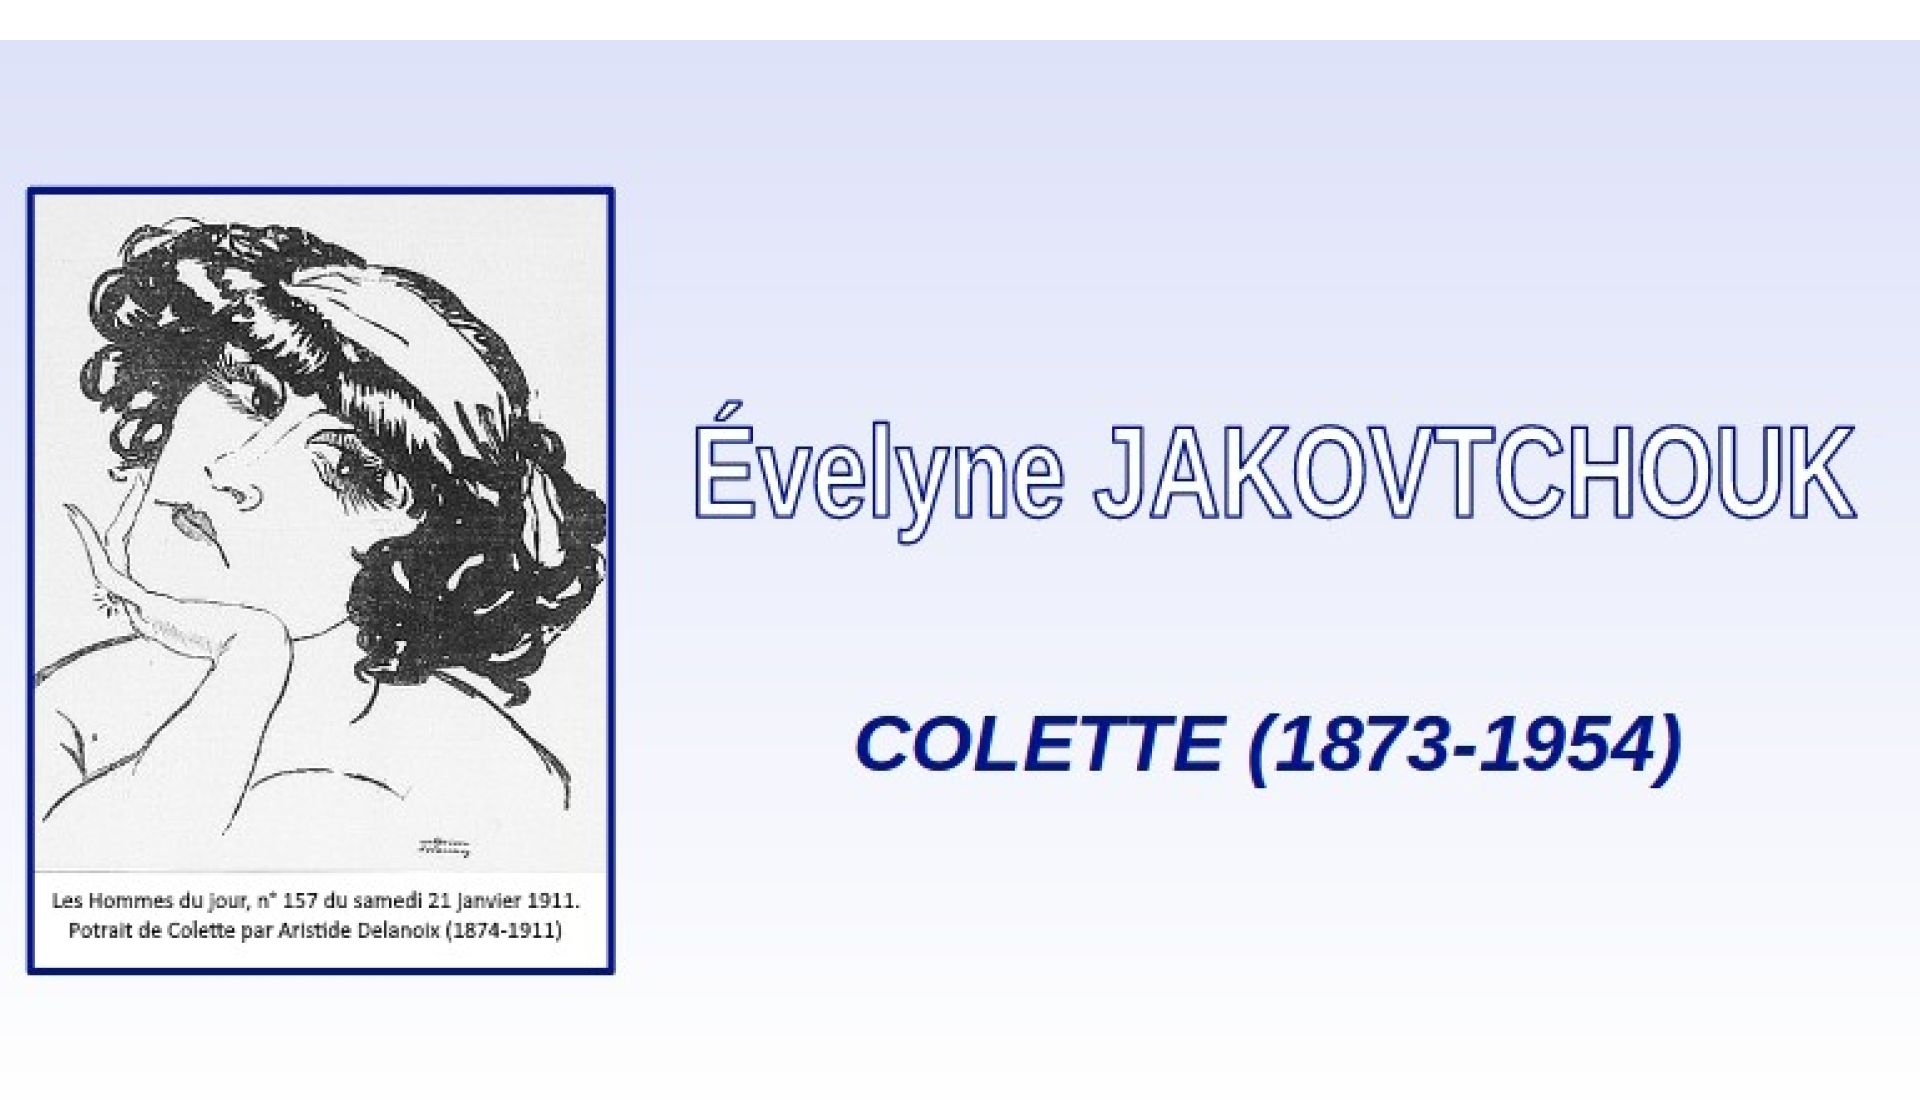 COLETTE (1873-1954)